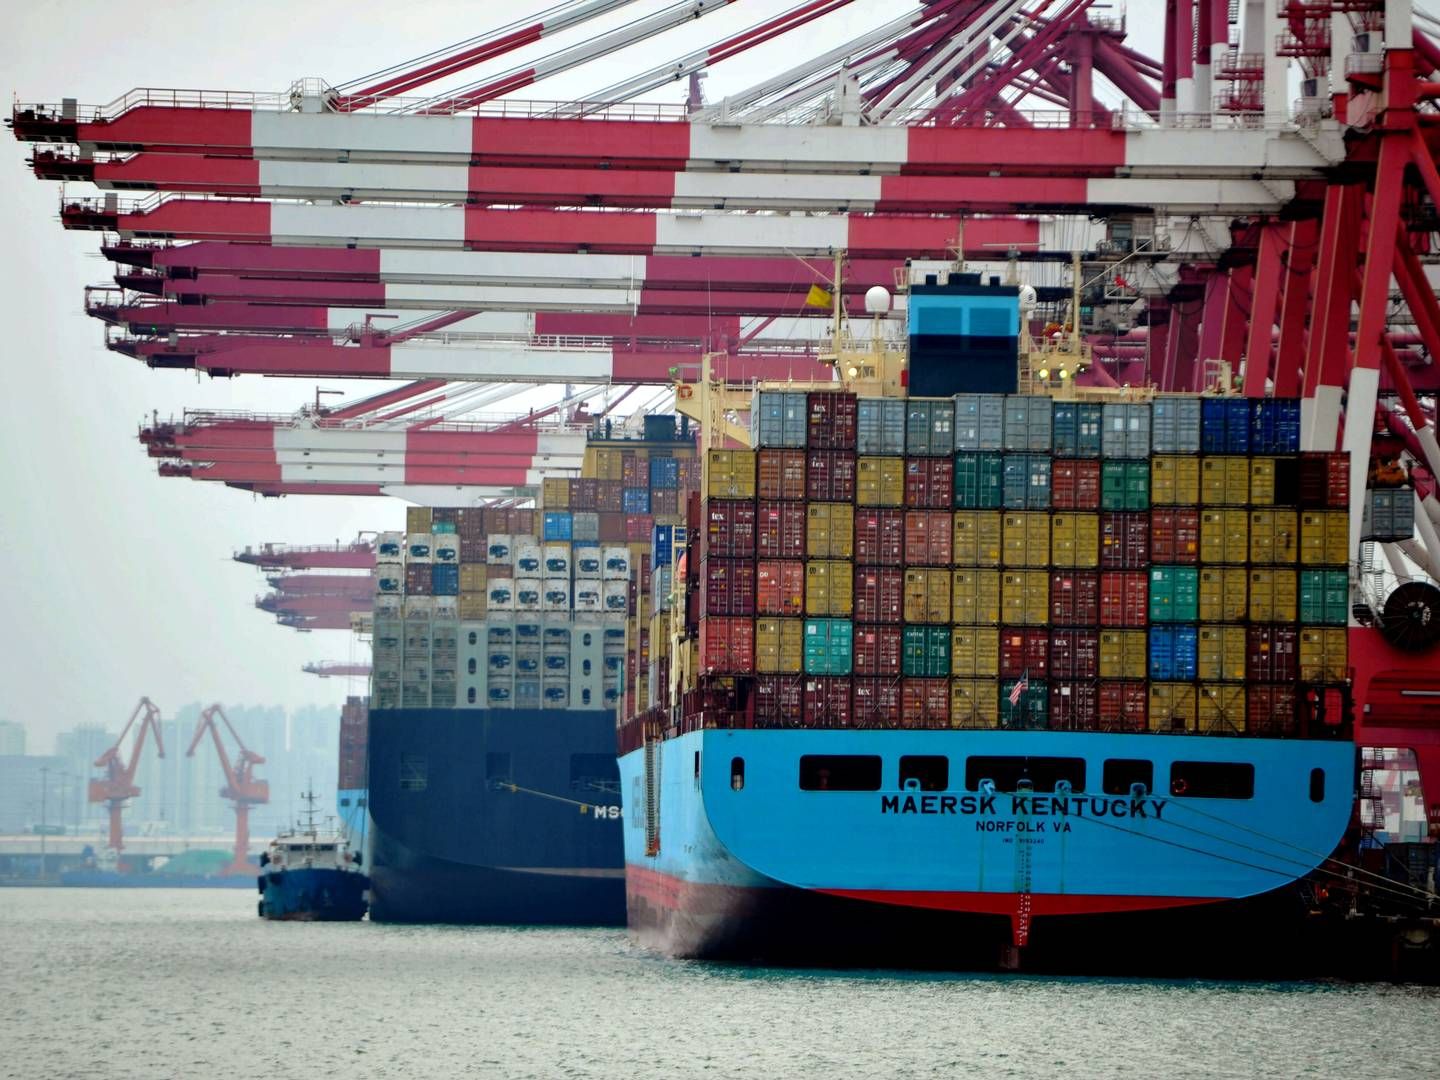 Verdens regeringer må reagere med konkrete politiske tiltag, der for alvor kan fremskynde shippings grønne omstilling, mener ISC og WSC. | Photo: Yu fangping